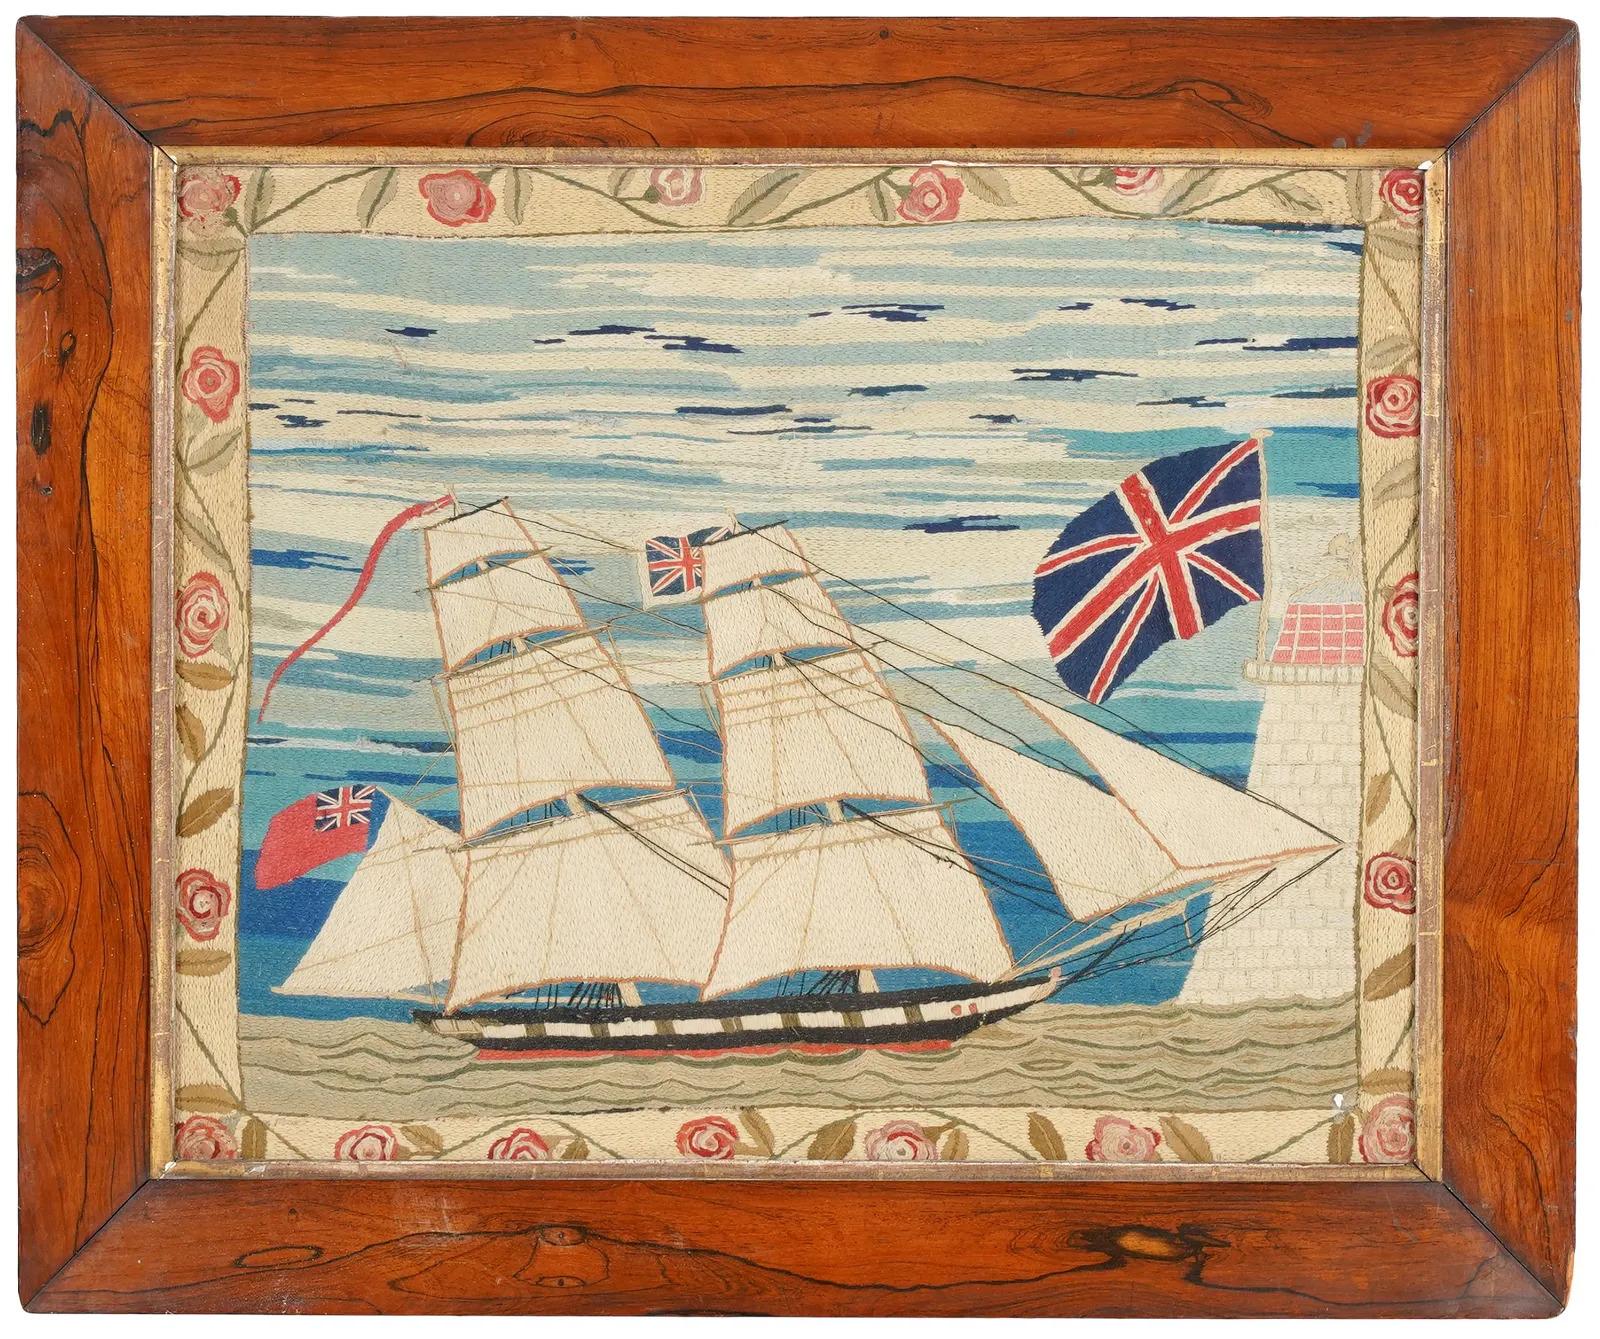 Britische Seemannswolle mit ungewöhnlicher Bordüre,
Kettenstich,
CIRCA 1875
 
Das ungewöhnlich gestaltete, charmante Seemannswolltuch zeigt die Steuerbordseite eines britischen Zweimasters, der in einen Hafen einläuft, mit einem Fort, das einen